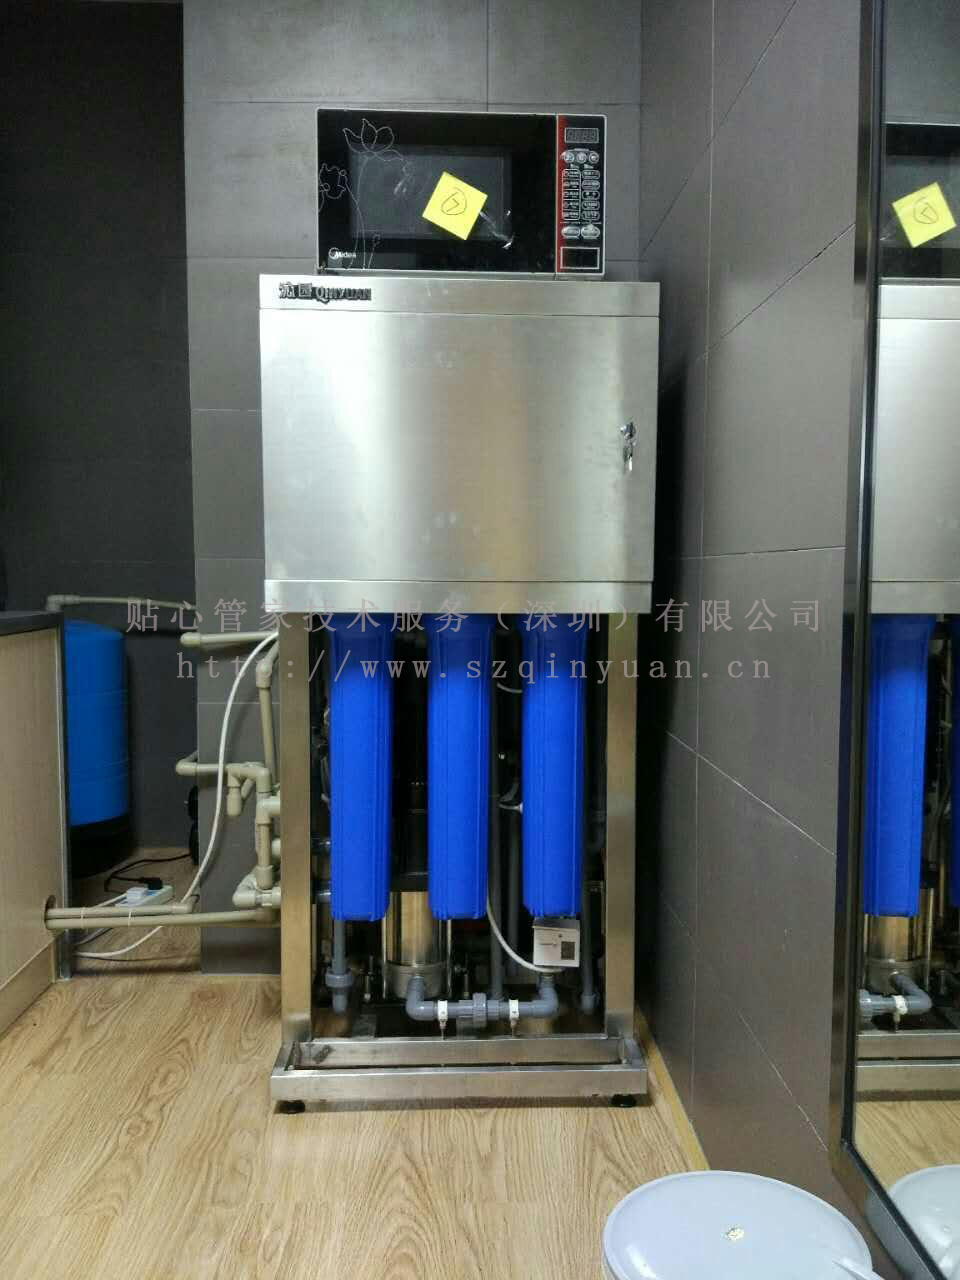 商用纯水机QS-RO-LP250，制水量250升/时，适用人数500-1000人